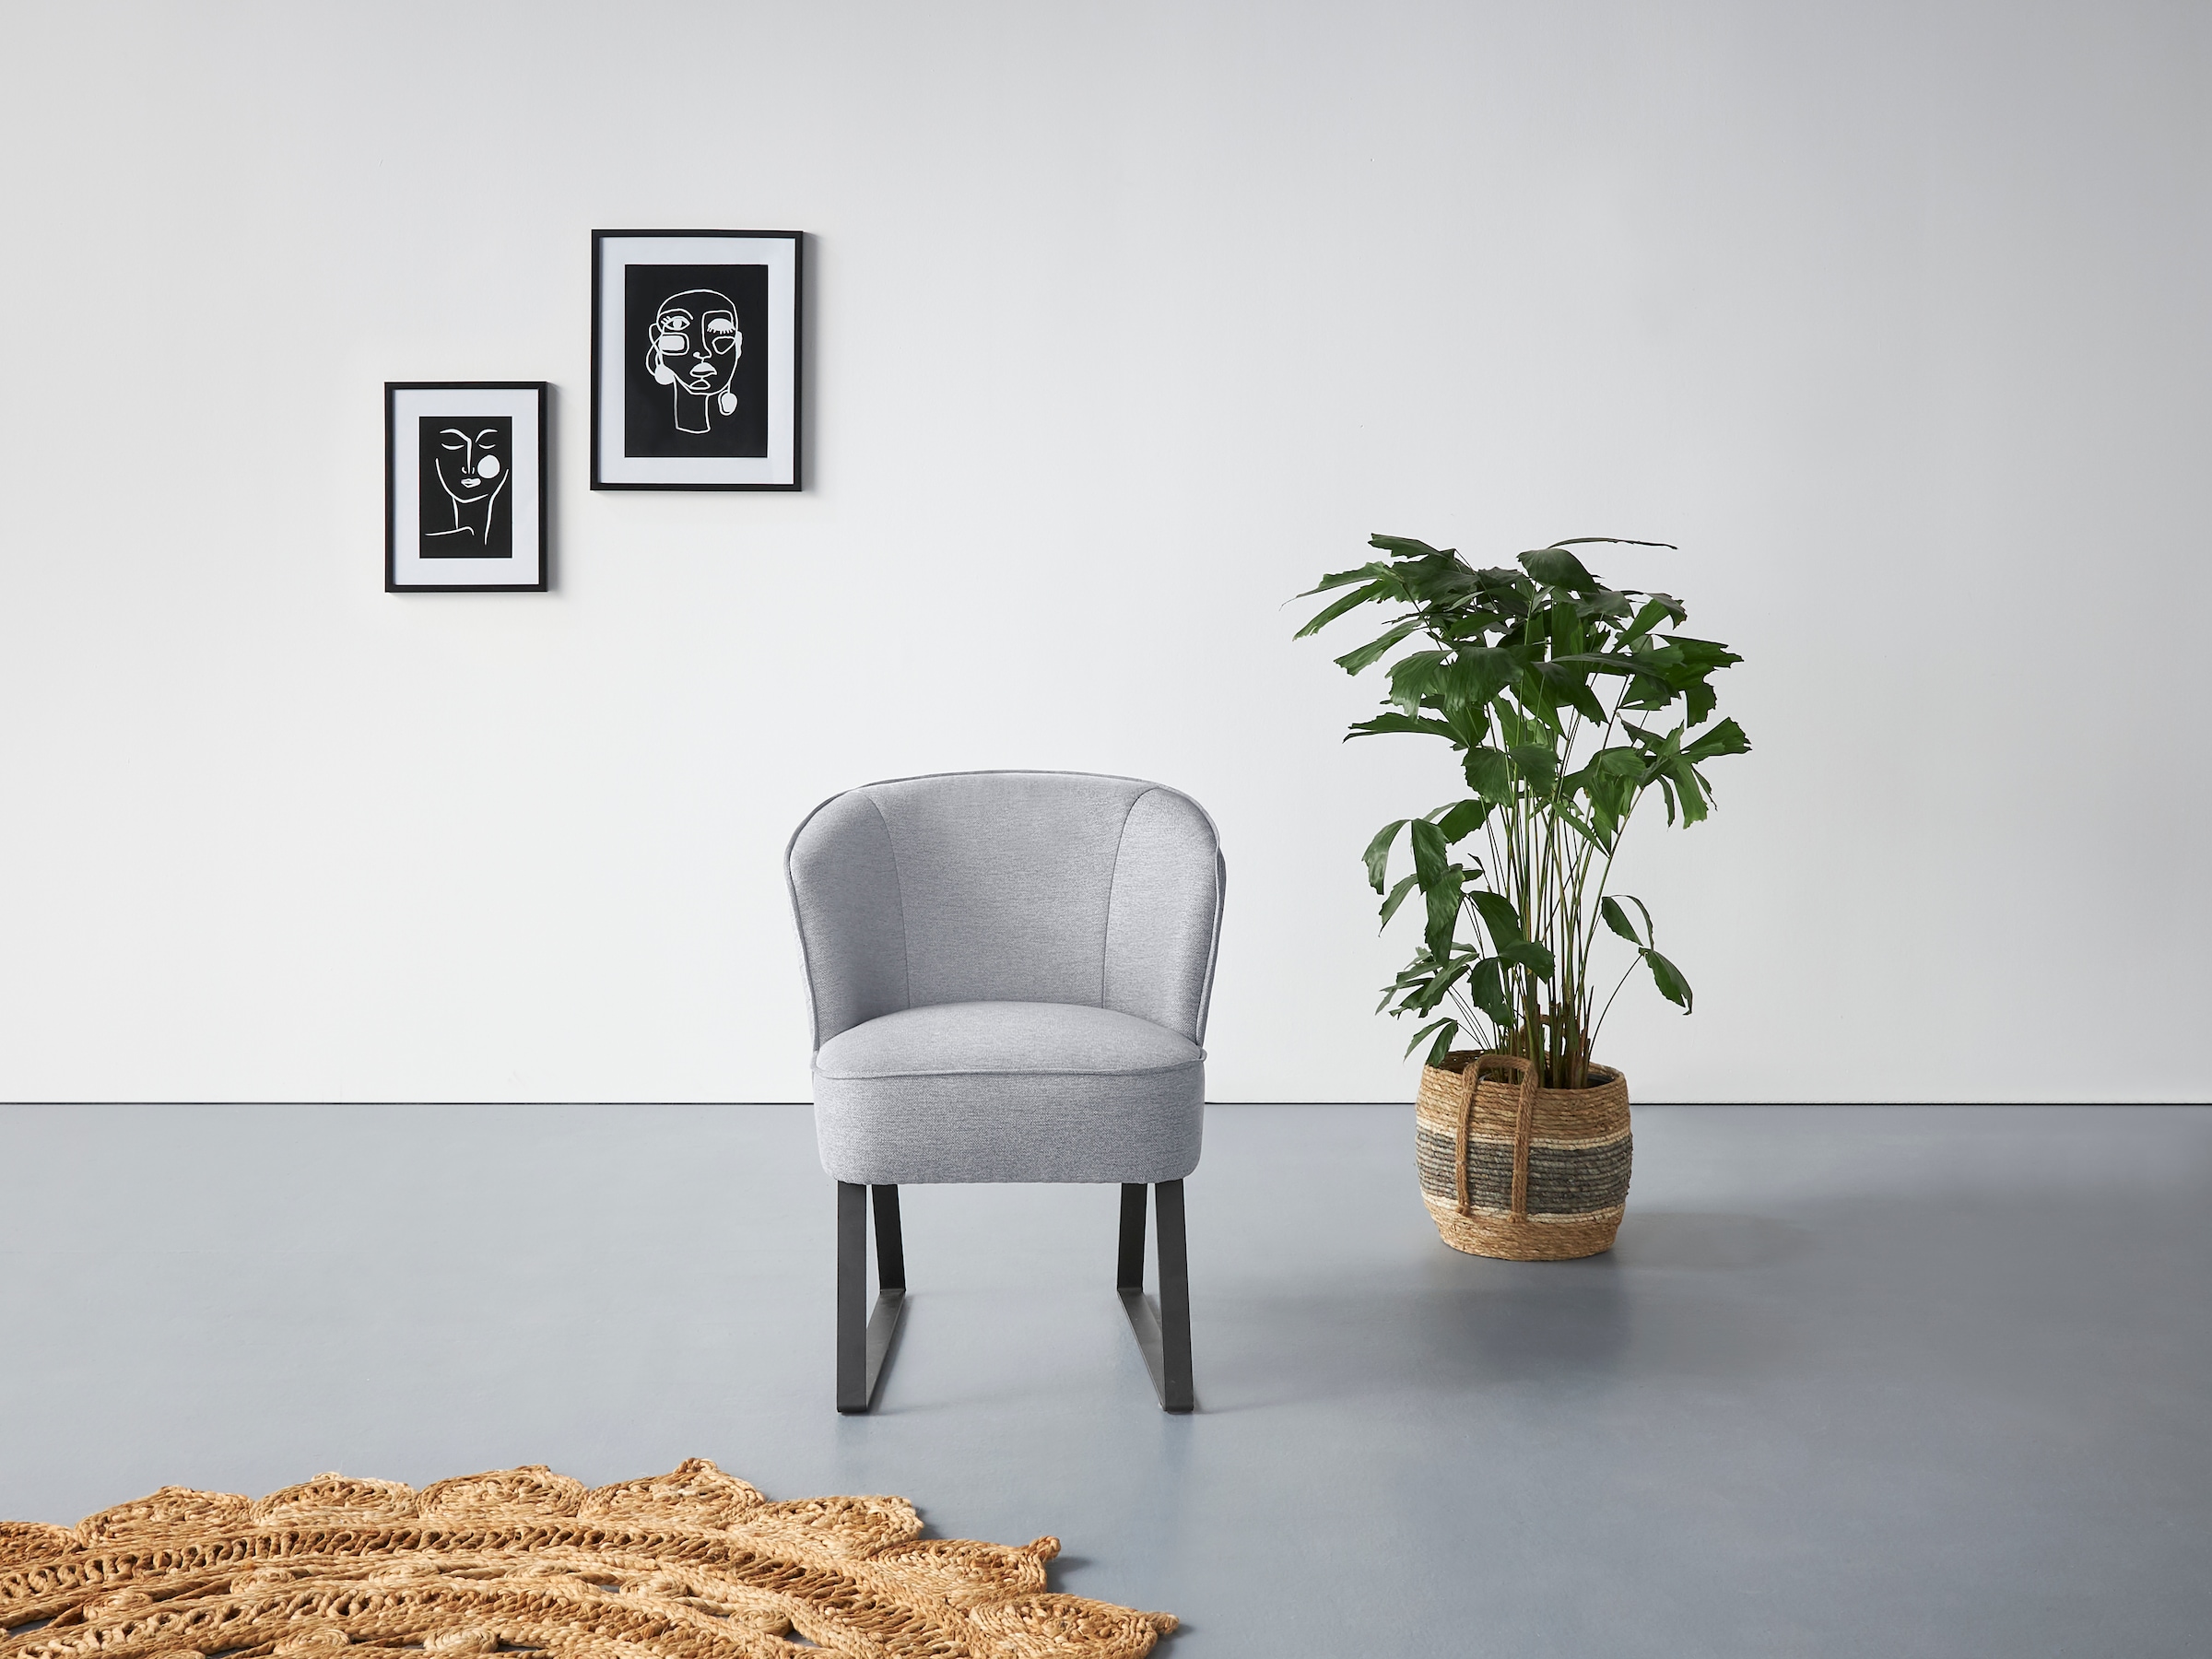 exxpo - sofa fashion Sessel »Americano«, mit Keder und Metallfüßen, Bezug in verschiedenen Qualitäten, 1 Stck.